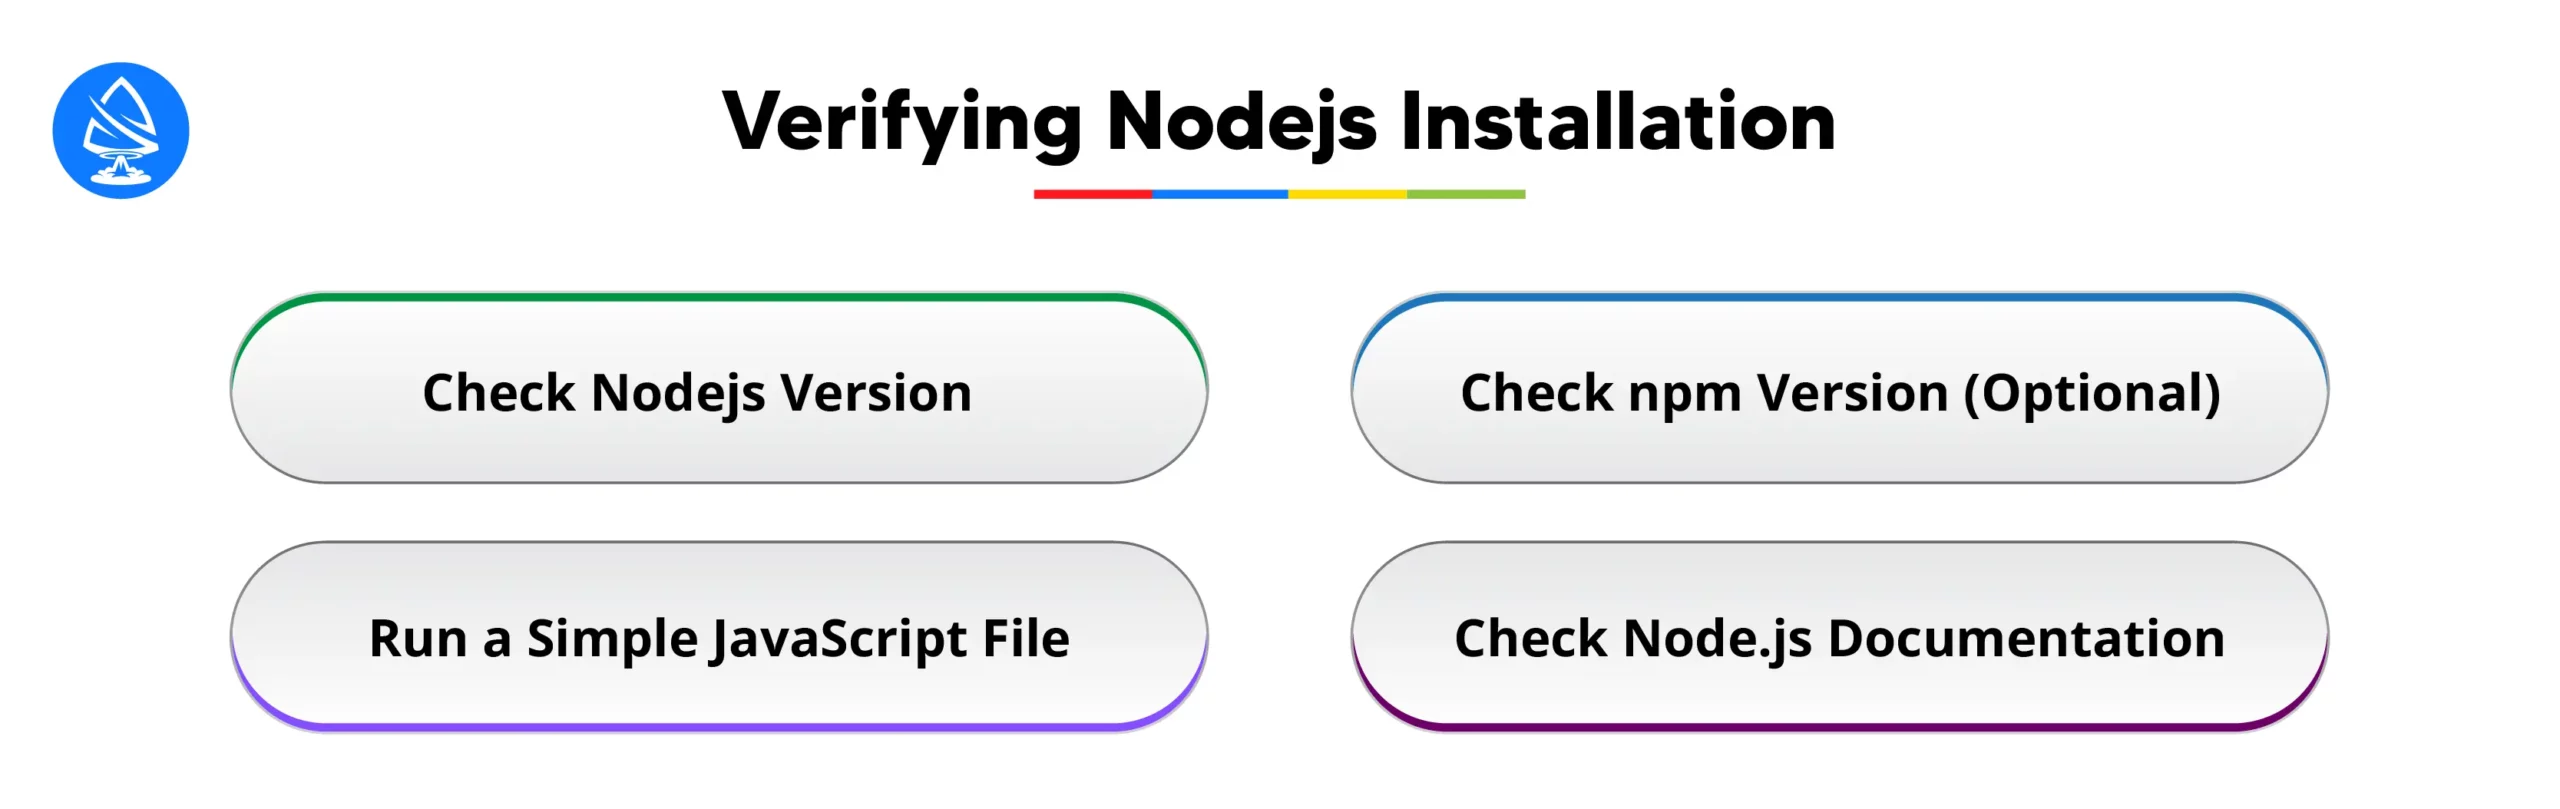 Verifying Nodejs Installation 